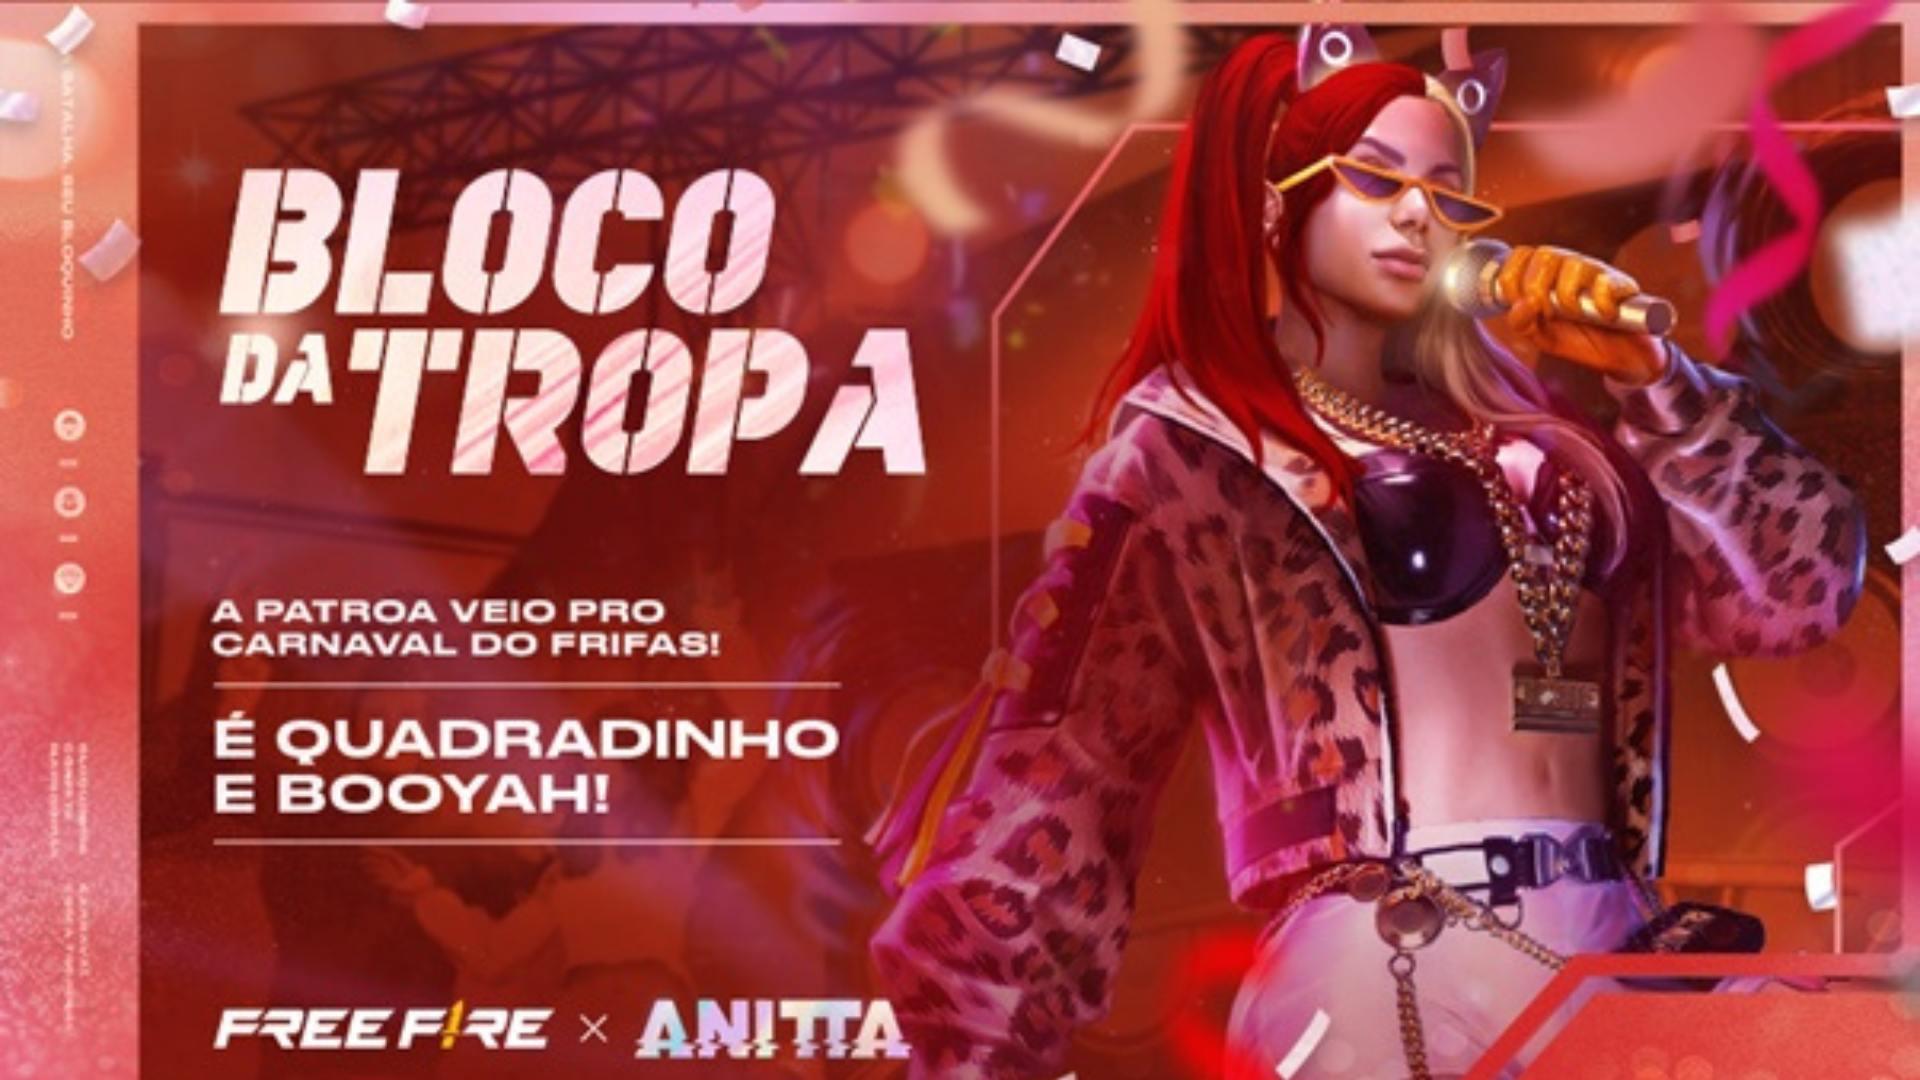 Anitta Free Fire: A Patroa chega para o Carnaval estrelando a nova parceria com a Claro